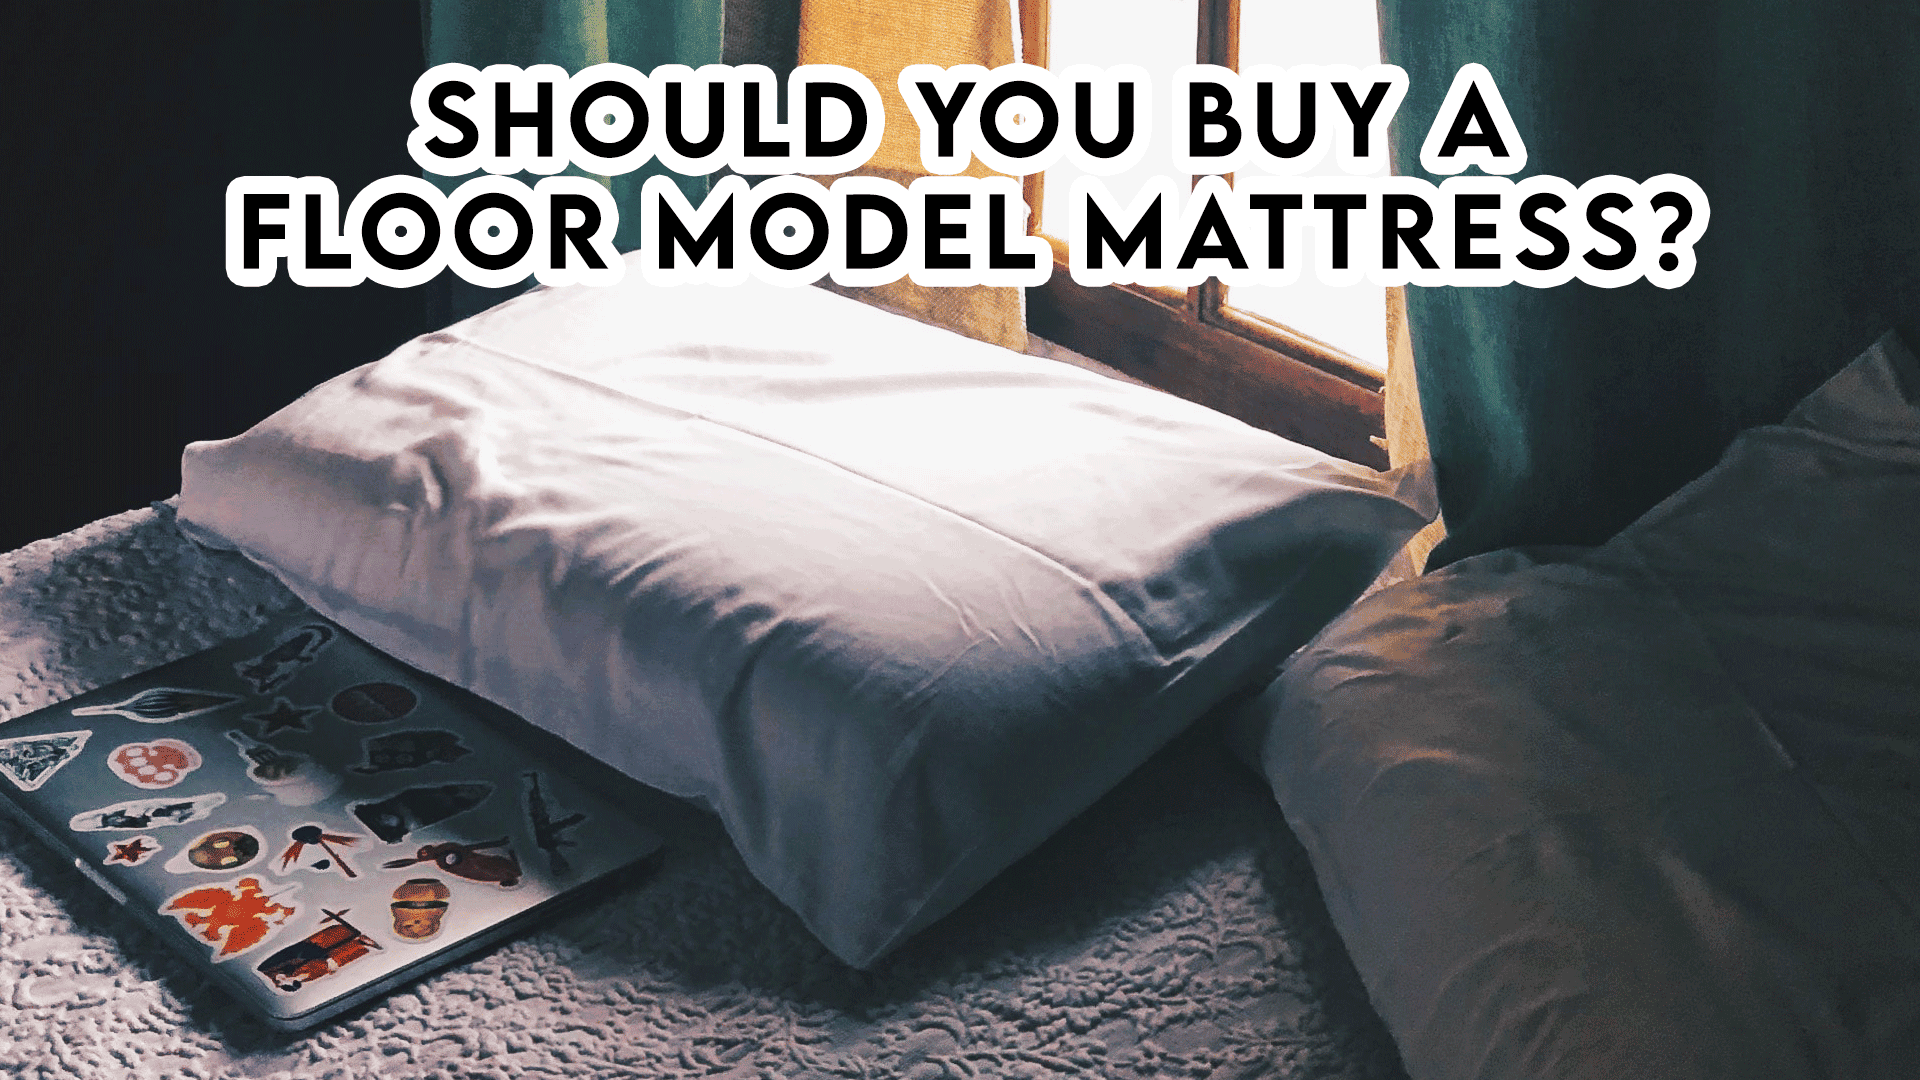 Should You Buy a Floor Model Mattress